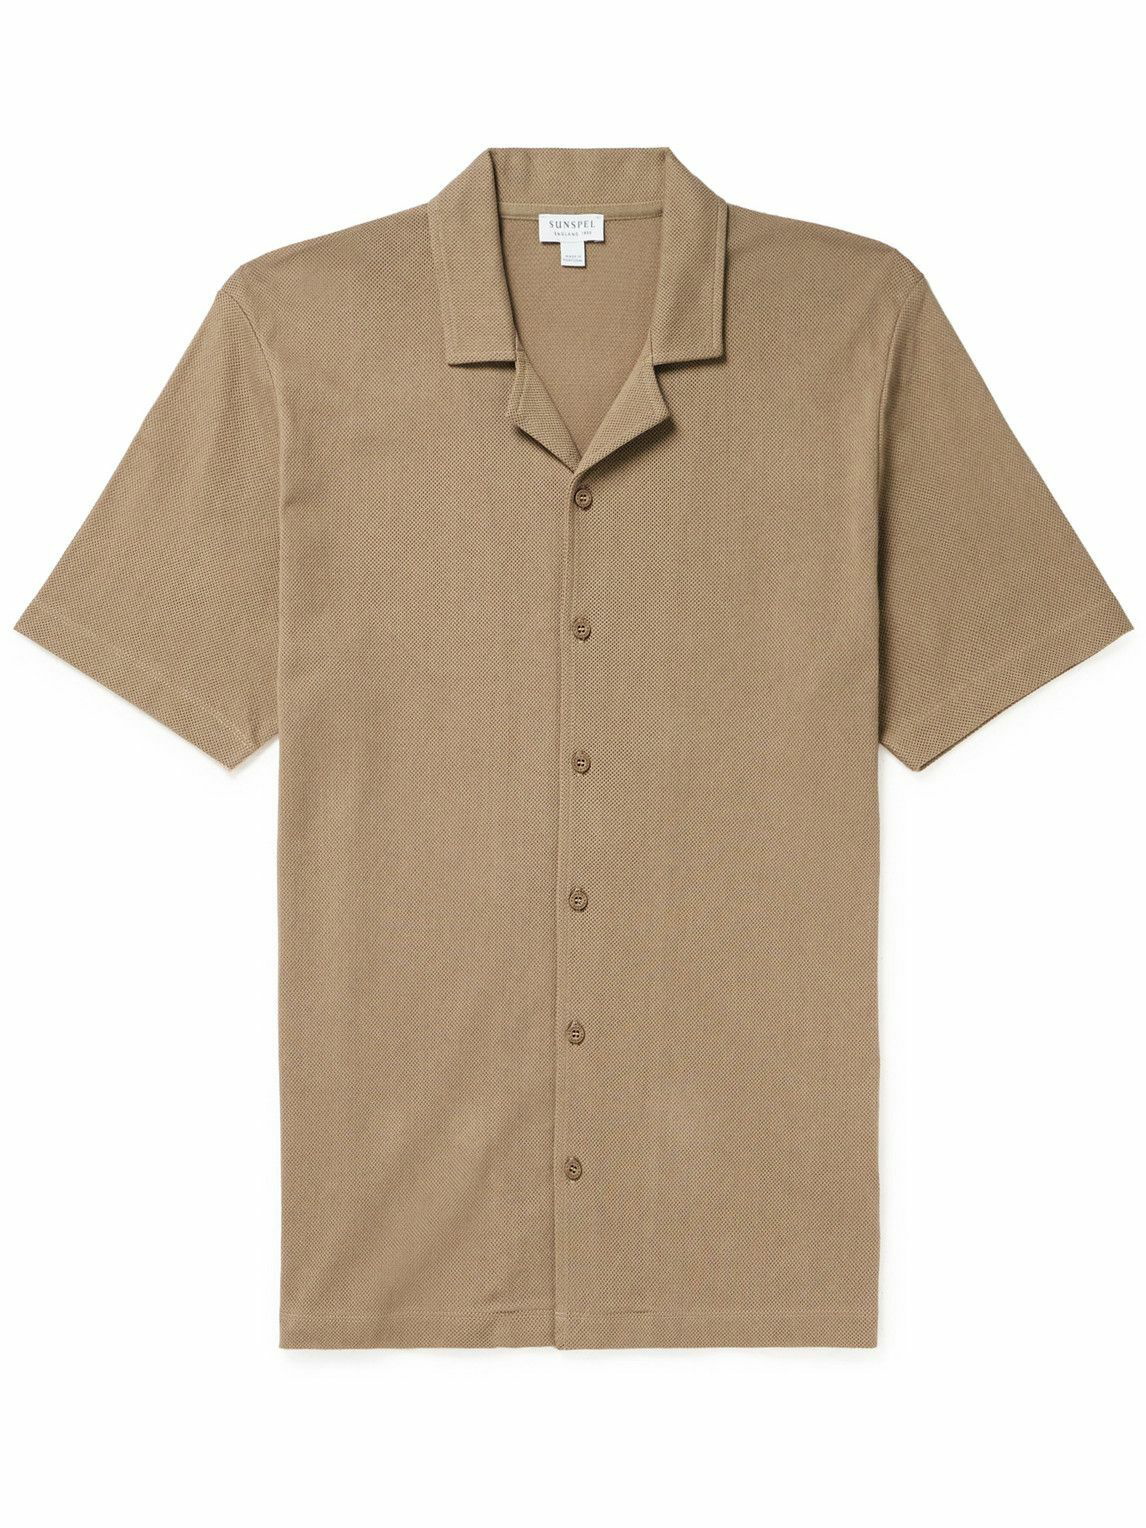 Sunspel - Riviera Camp-Collar Honeycomb-Knit Cotton Shirt - Brown Sunspel